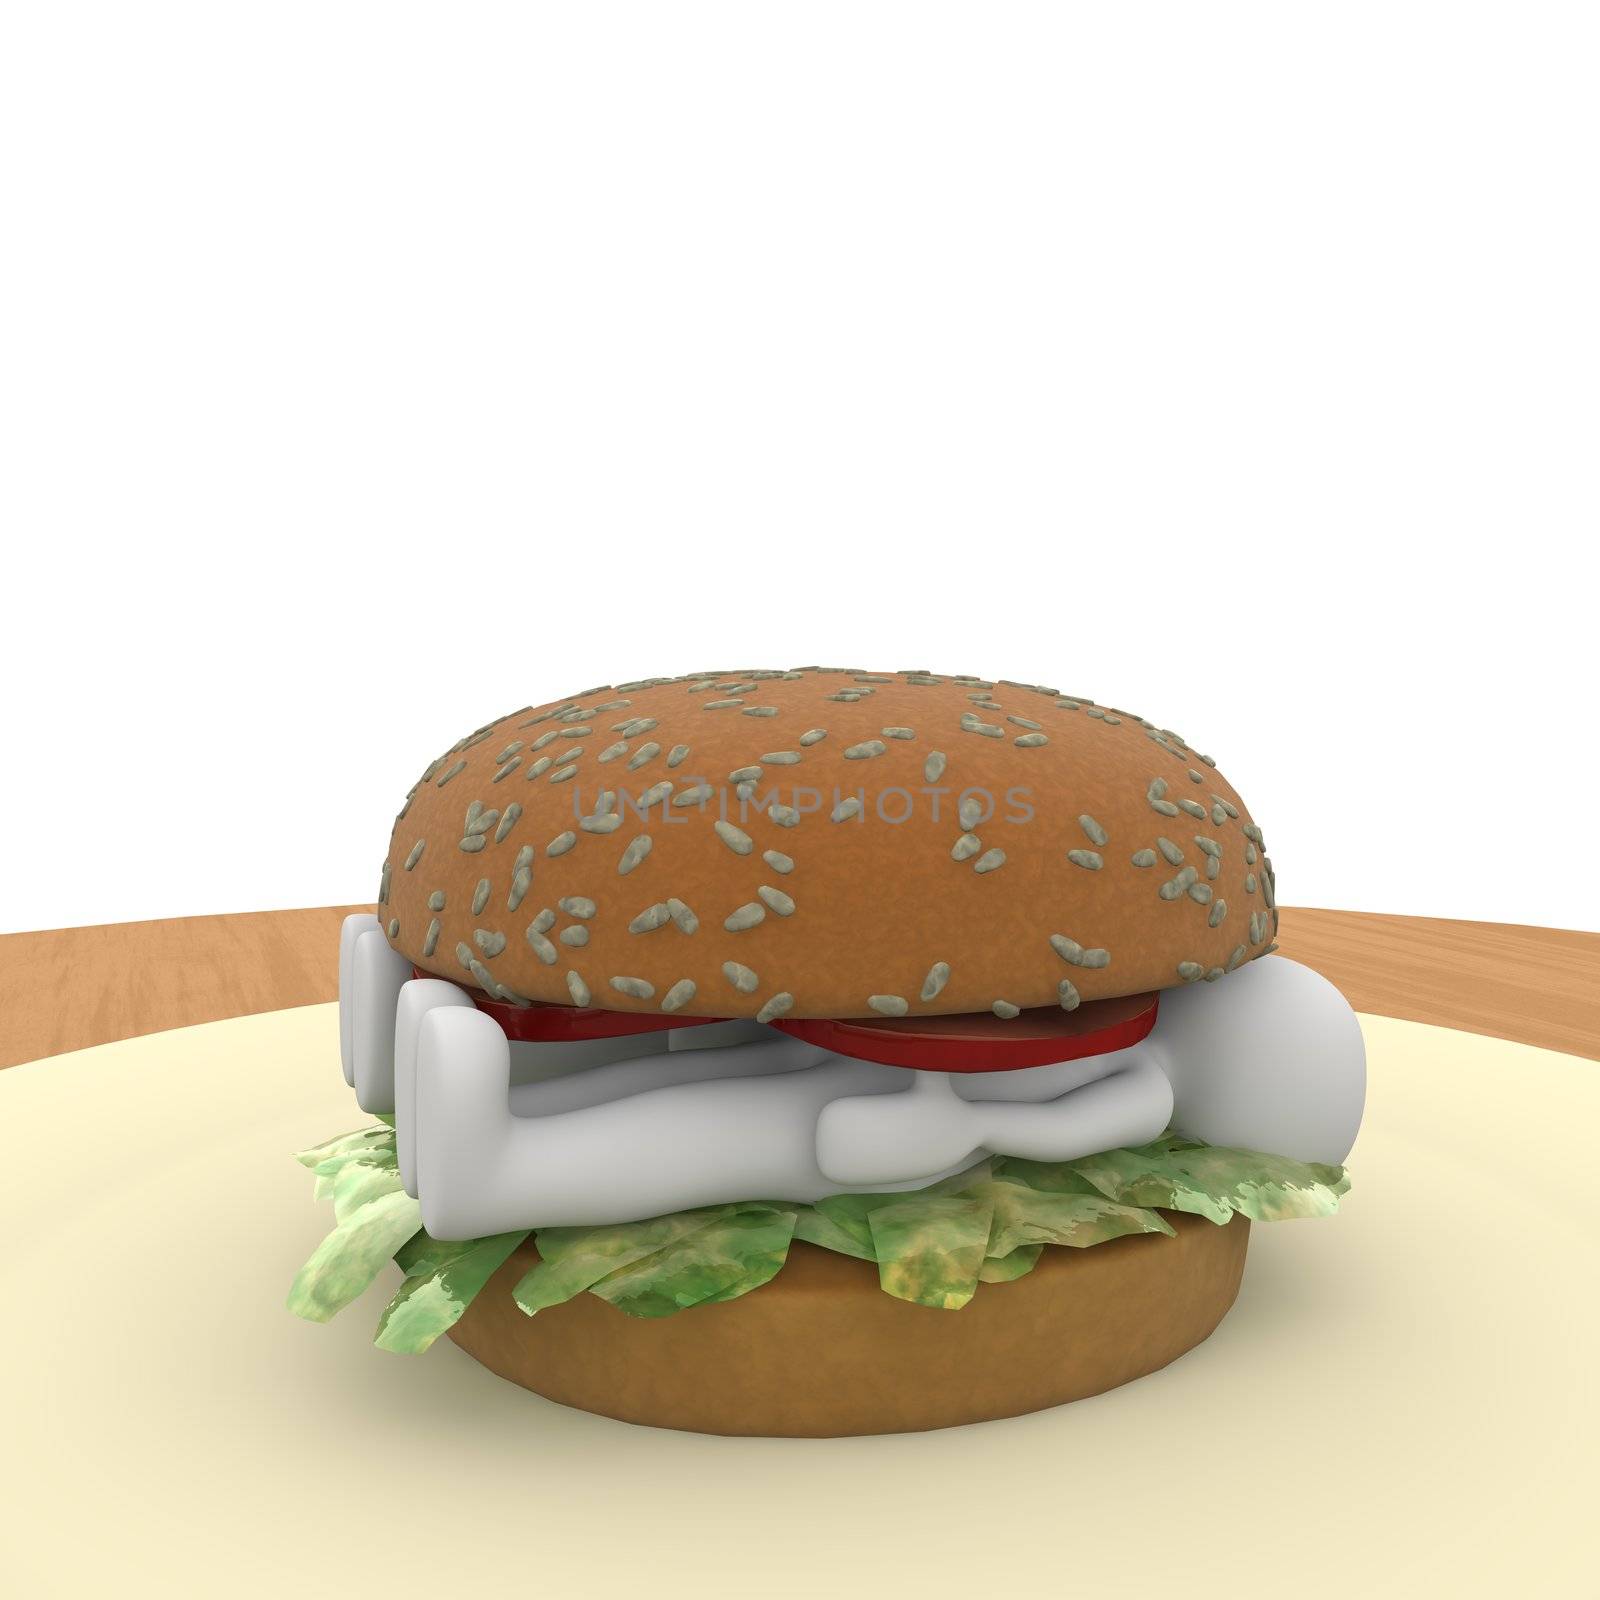 Hamburger makes eating fast but has enough calories